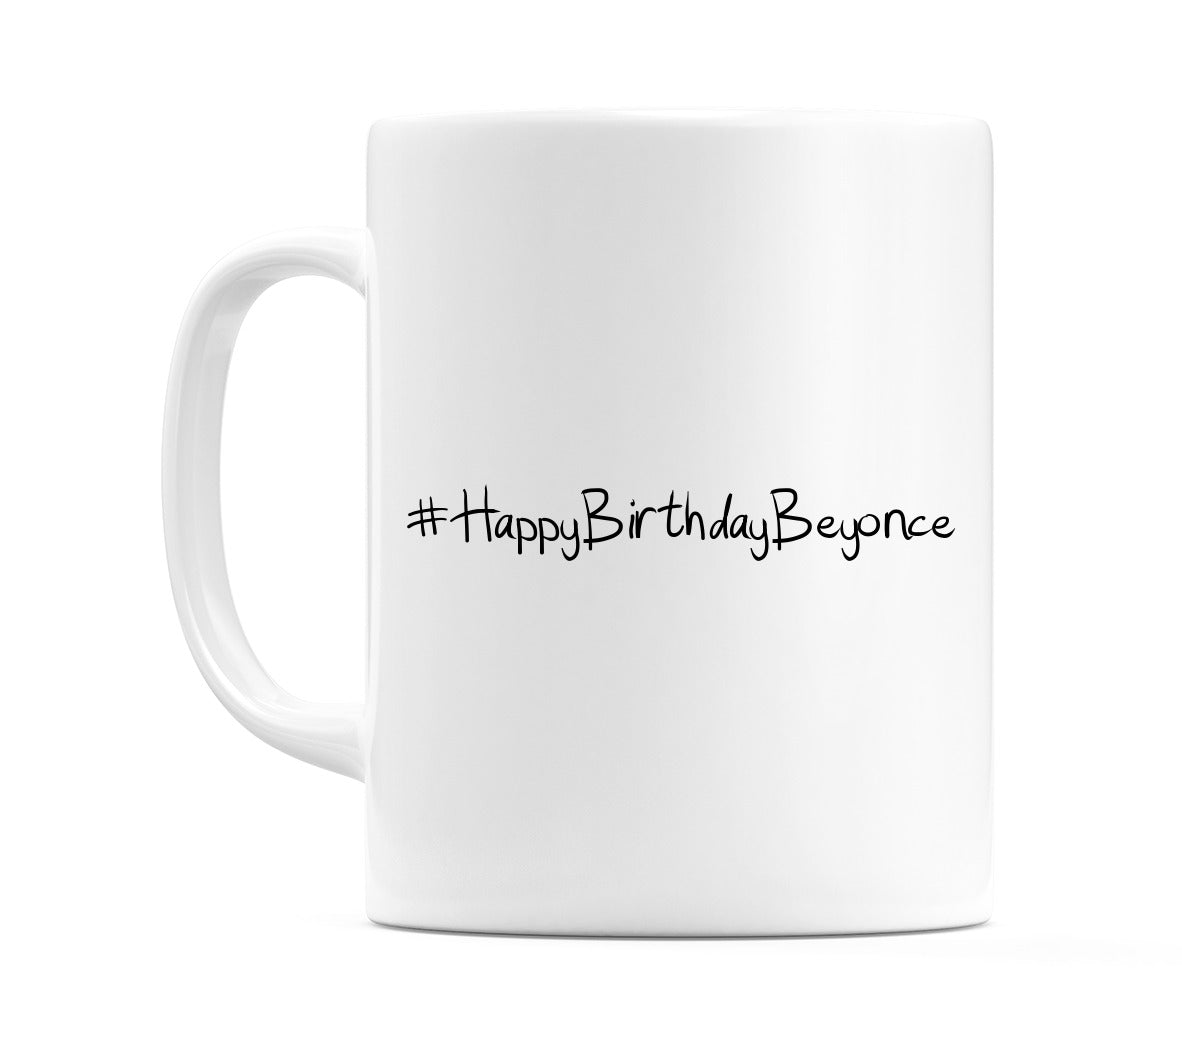 #HappyBirthdayBeyonce Mug